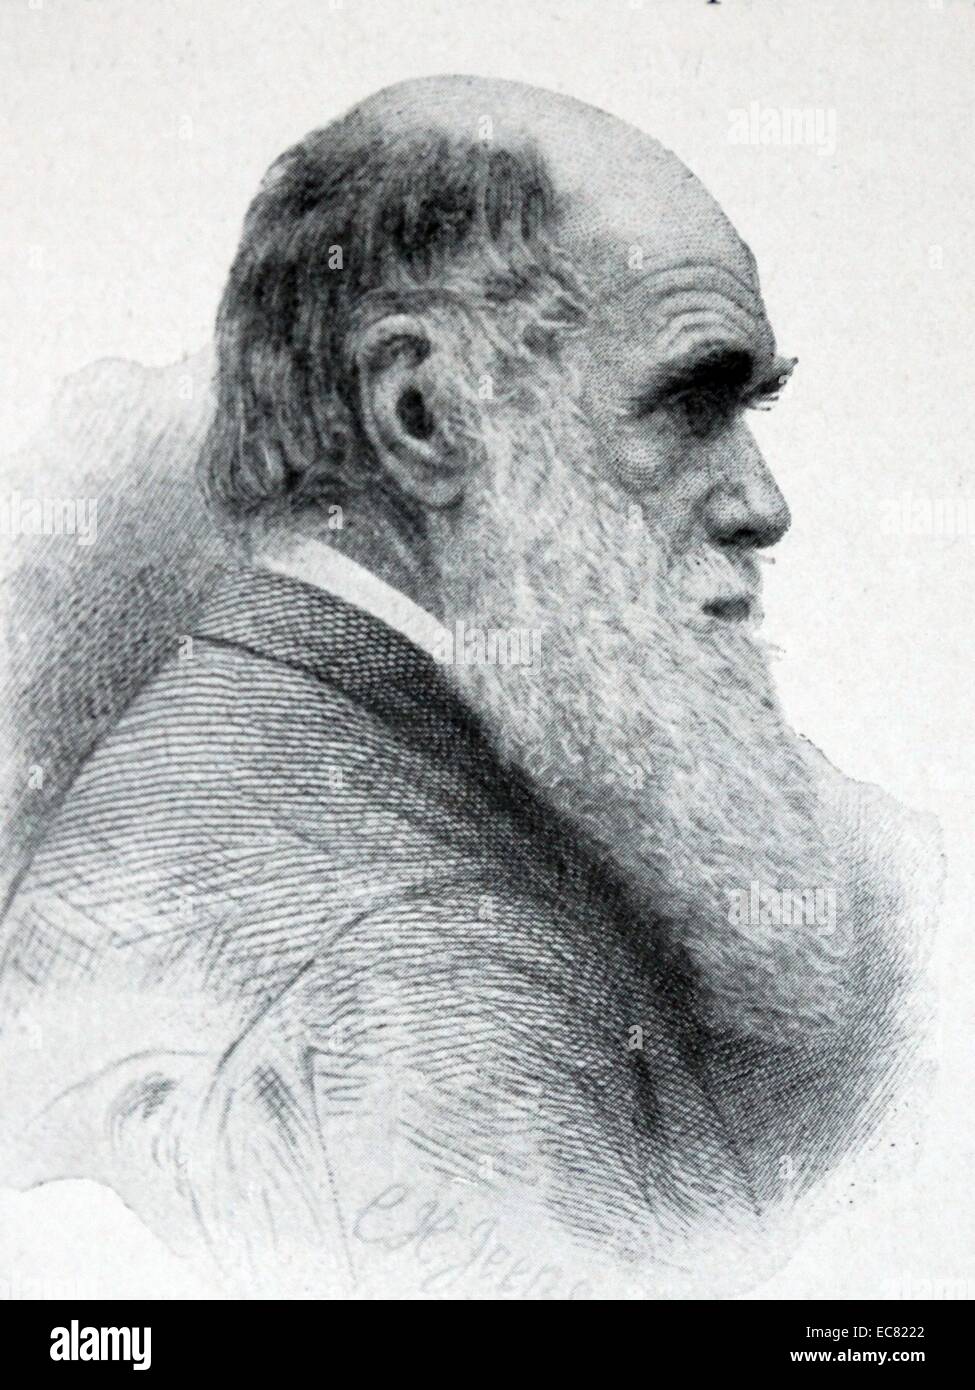 Charles Robert Darwin (12. Februar 1809 - 19. April 1882) war ein englischer Naturforscher und Geologe, der für seine evolutionäre Theorie der Menschen bekannt 'Darwin's Theorie". Stockfoto